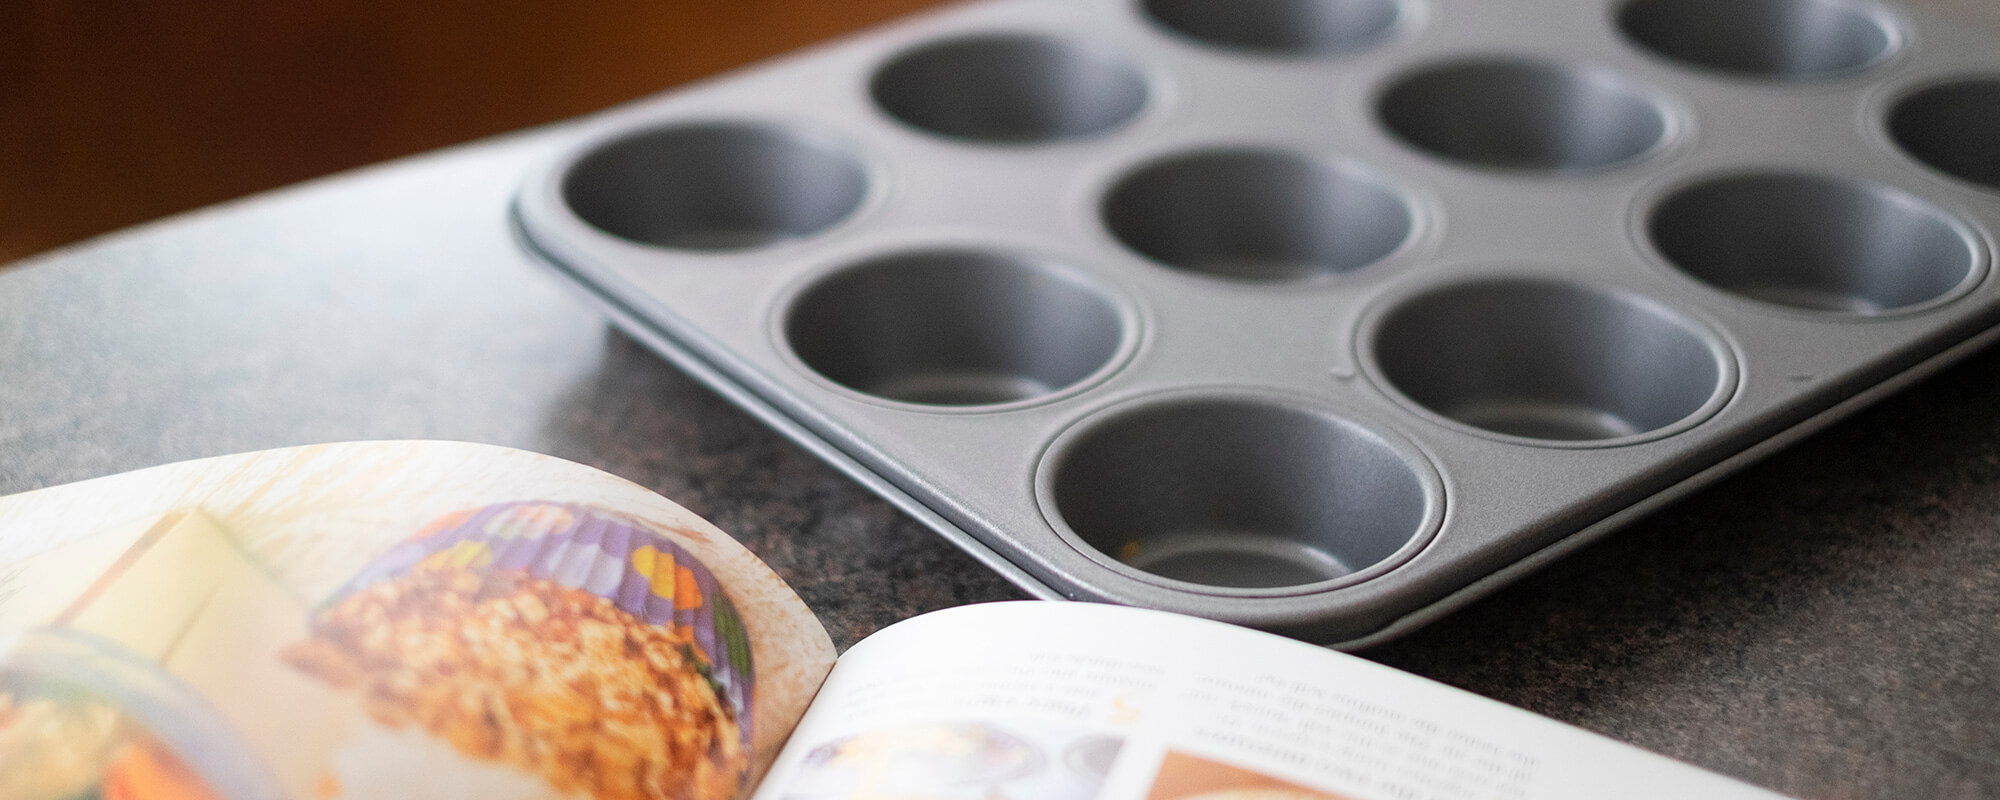 KüchenMarkt Life Hack Muffin-Formen, die raffinierten Küchenhelfer